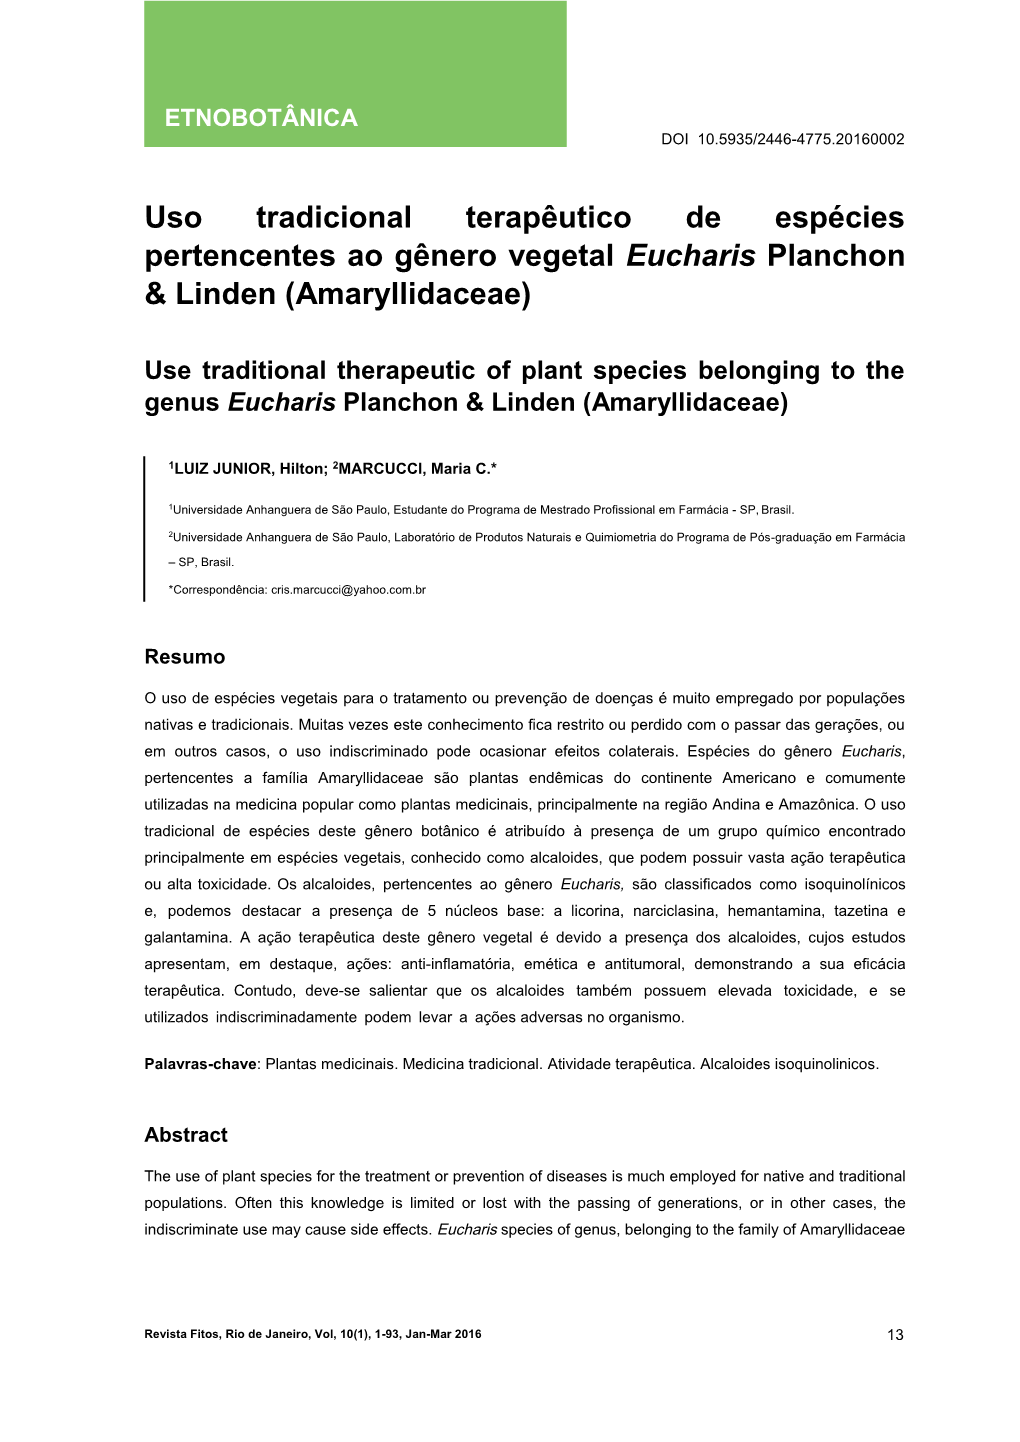 Uso Tradicional Terapêutico De Espécies Pertencentes Ao Gênero Vegetal Eucharis Planchon & Linden (Amaryllidaceae)